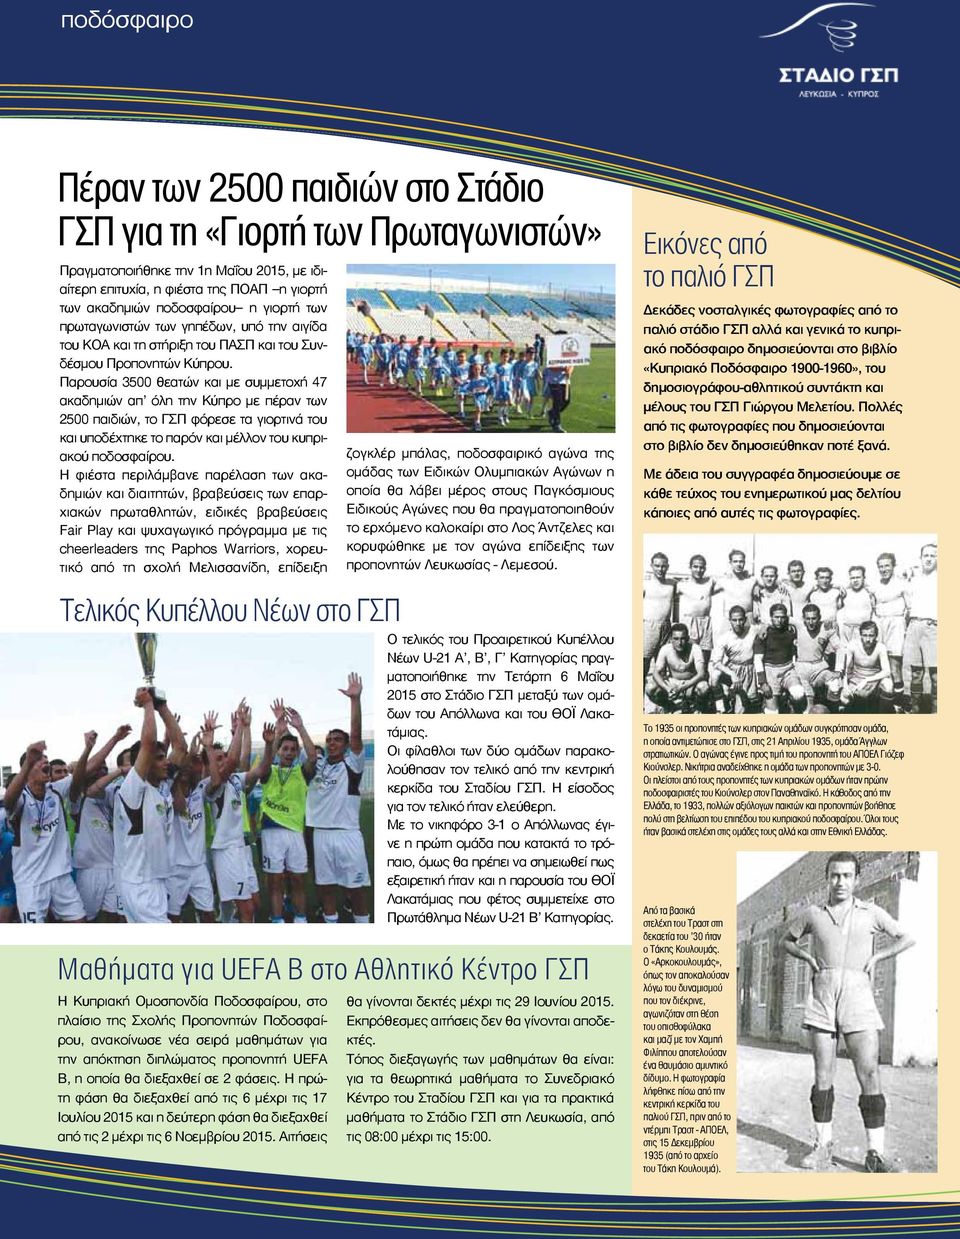 Παρουσία 3500 θεατών και με συμμετοχή 47 ακαδημιών απ όλη την Κύπρο με πέραν των 2500 παιδιών, το ΓΣΠ φόρεσε τα γιορτινά του και υποδέχτηκε το παρόν και μέλλον του κυπριακού ποδοσφαίρου.